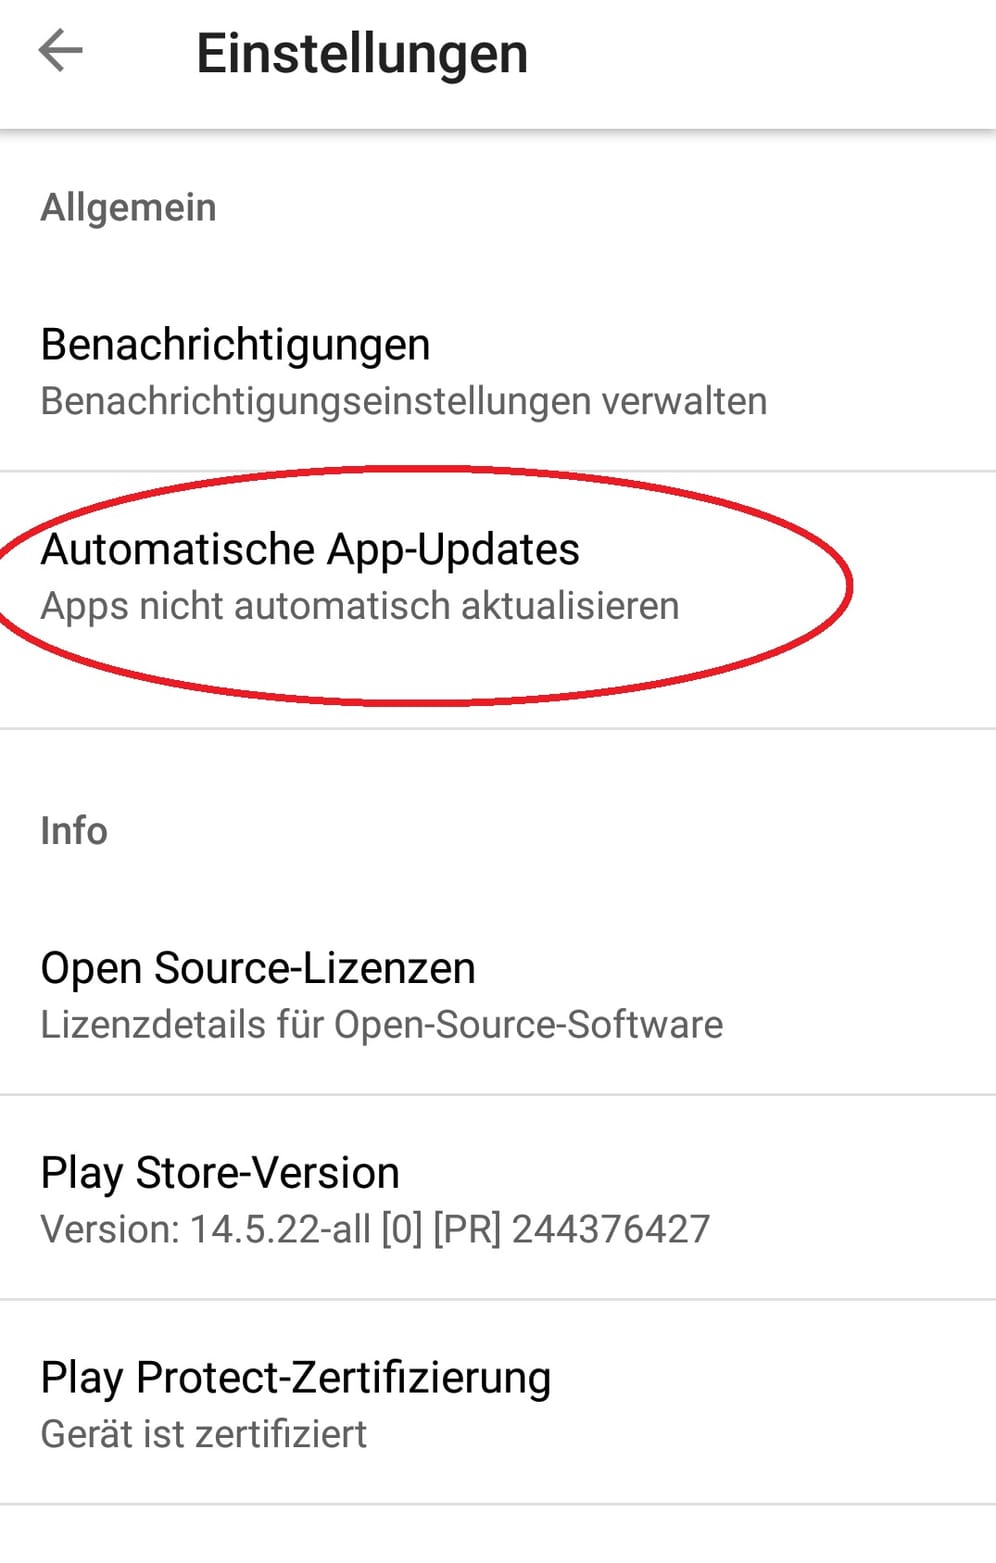 Klicken Sie auf "Automatisch App-Updates"